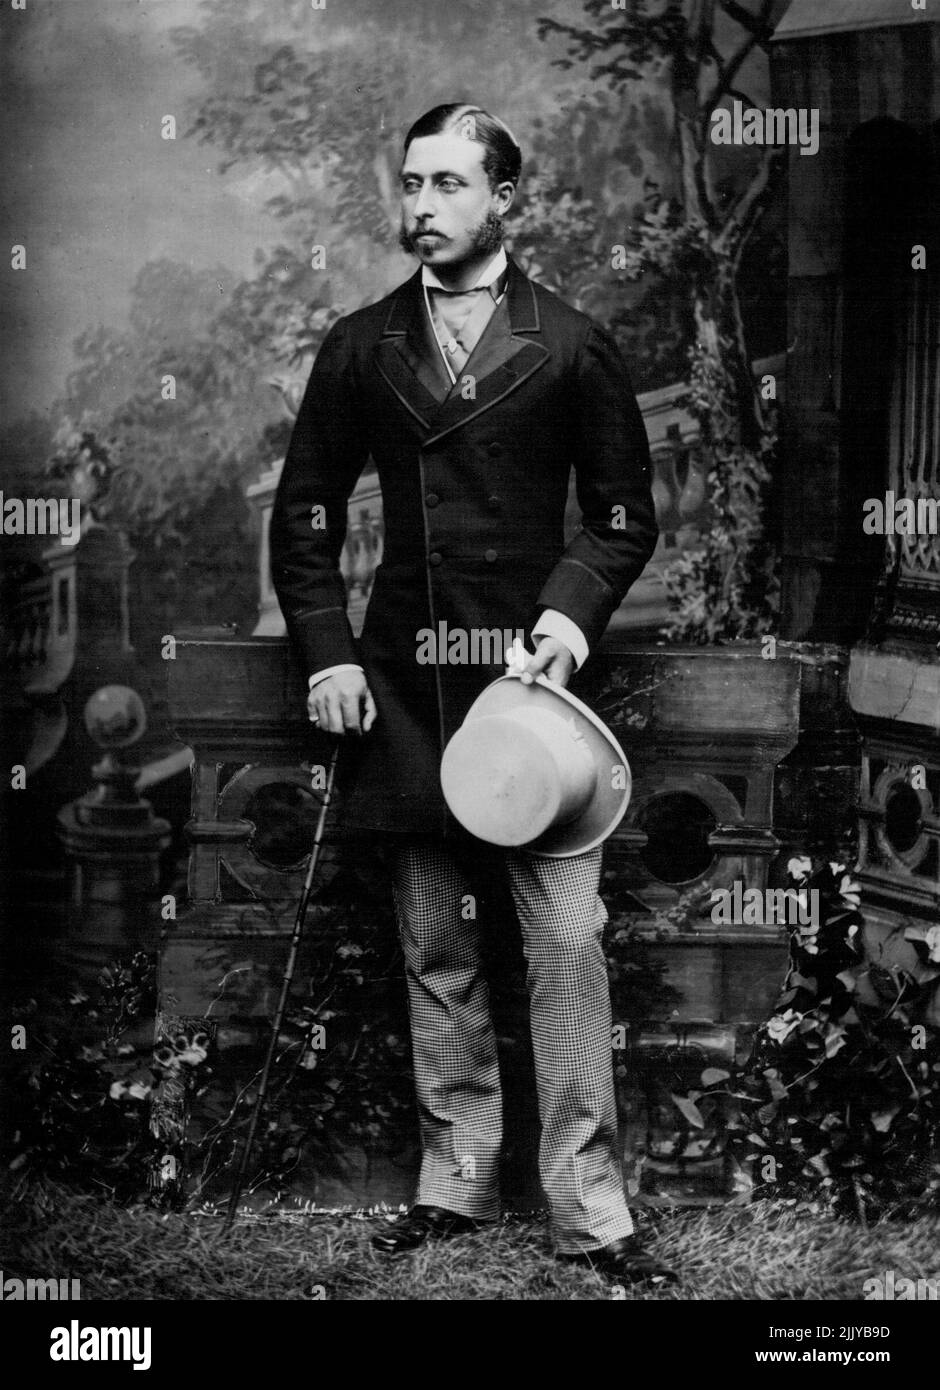 El duque de Connaught -- Este interesante estudio muestra: S.A.R. el duque de Connaught, en 1873. Nacido en 1850, recientemente celebró su cumpleaños número 86th. El duque de Connaught es el único hijo sobreviviente de la reina Victoria. 13 de julio de 1936. (Foto de Bassano Ltd.) Foto de stock